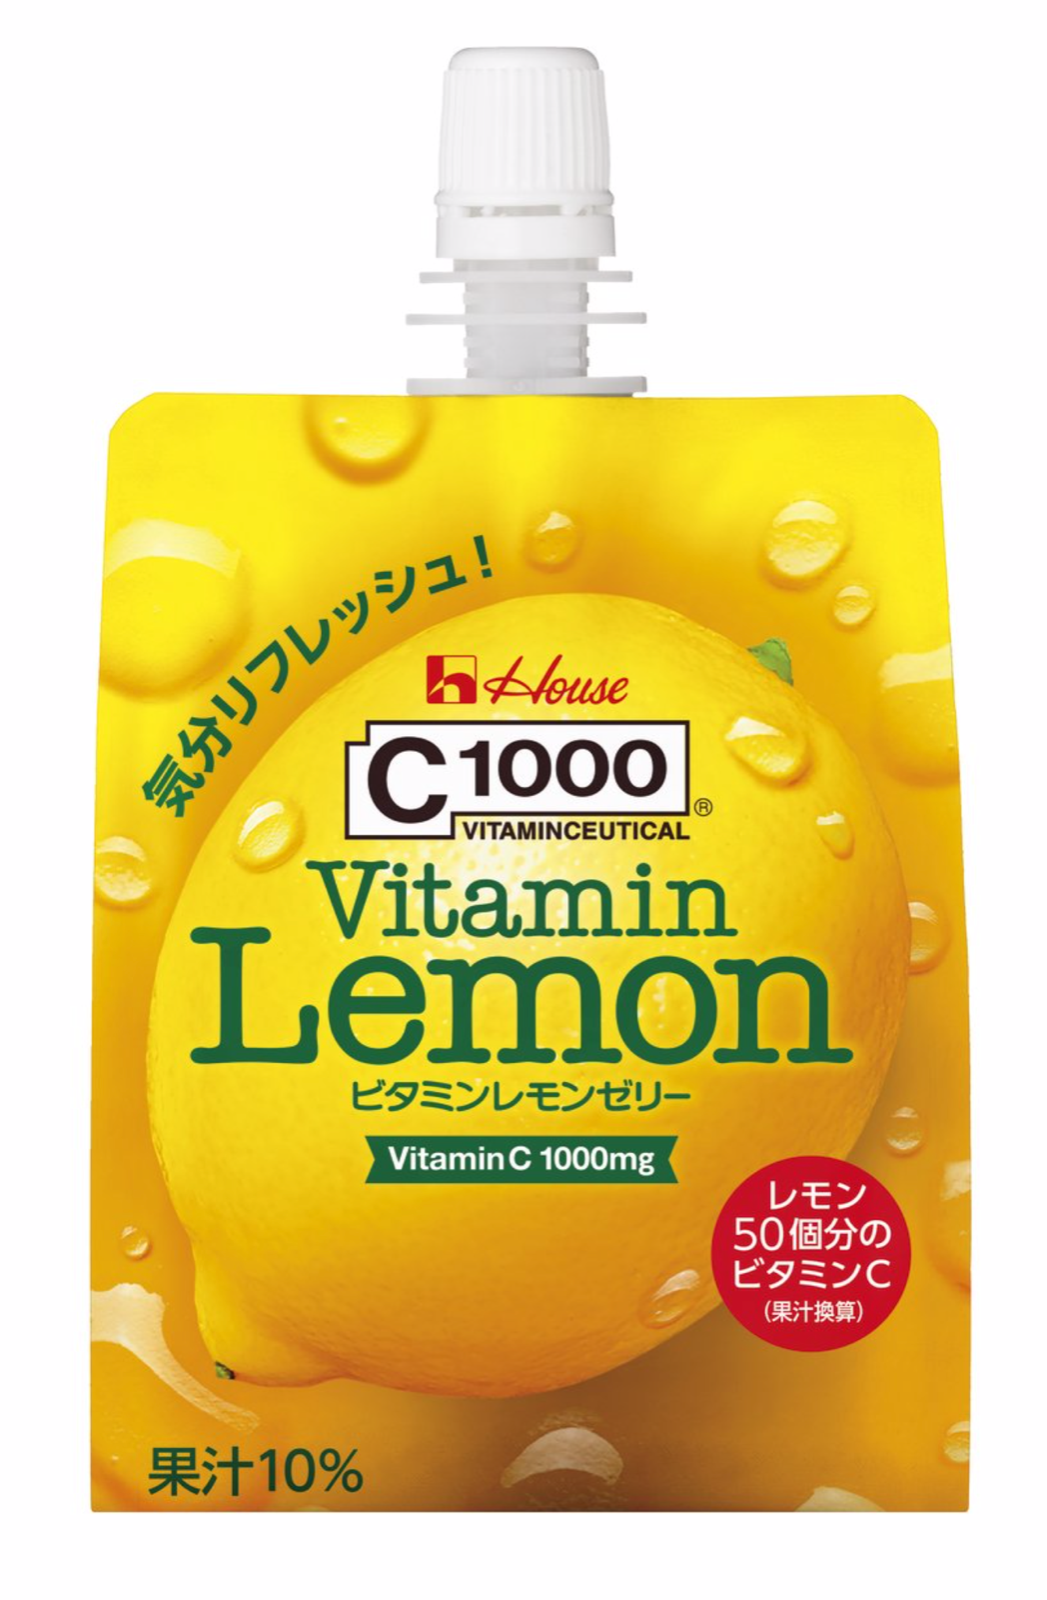 C1000 Vitamin Lemon